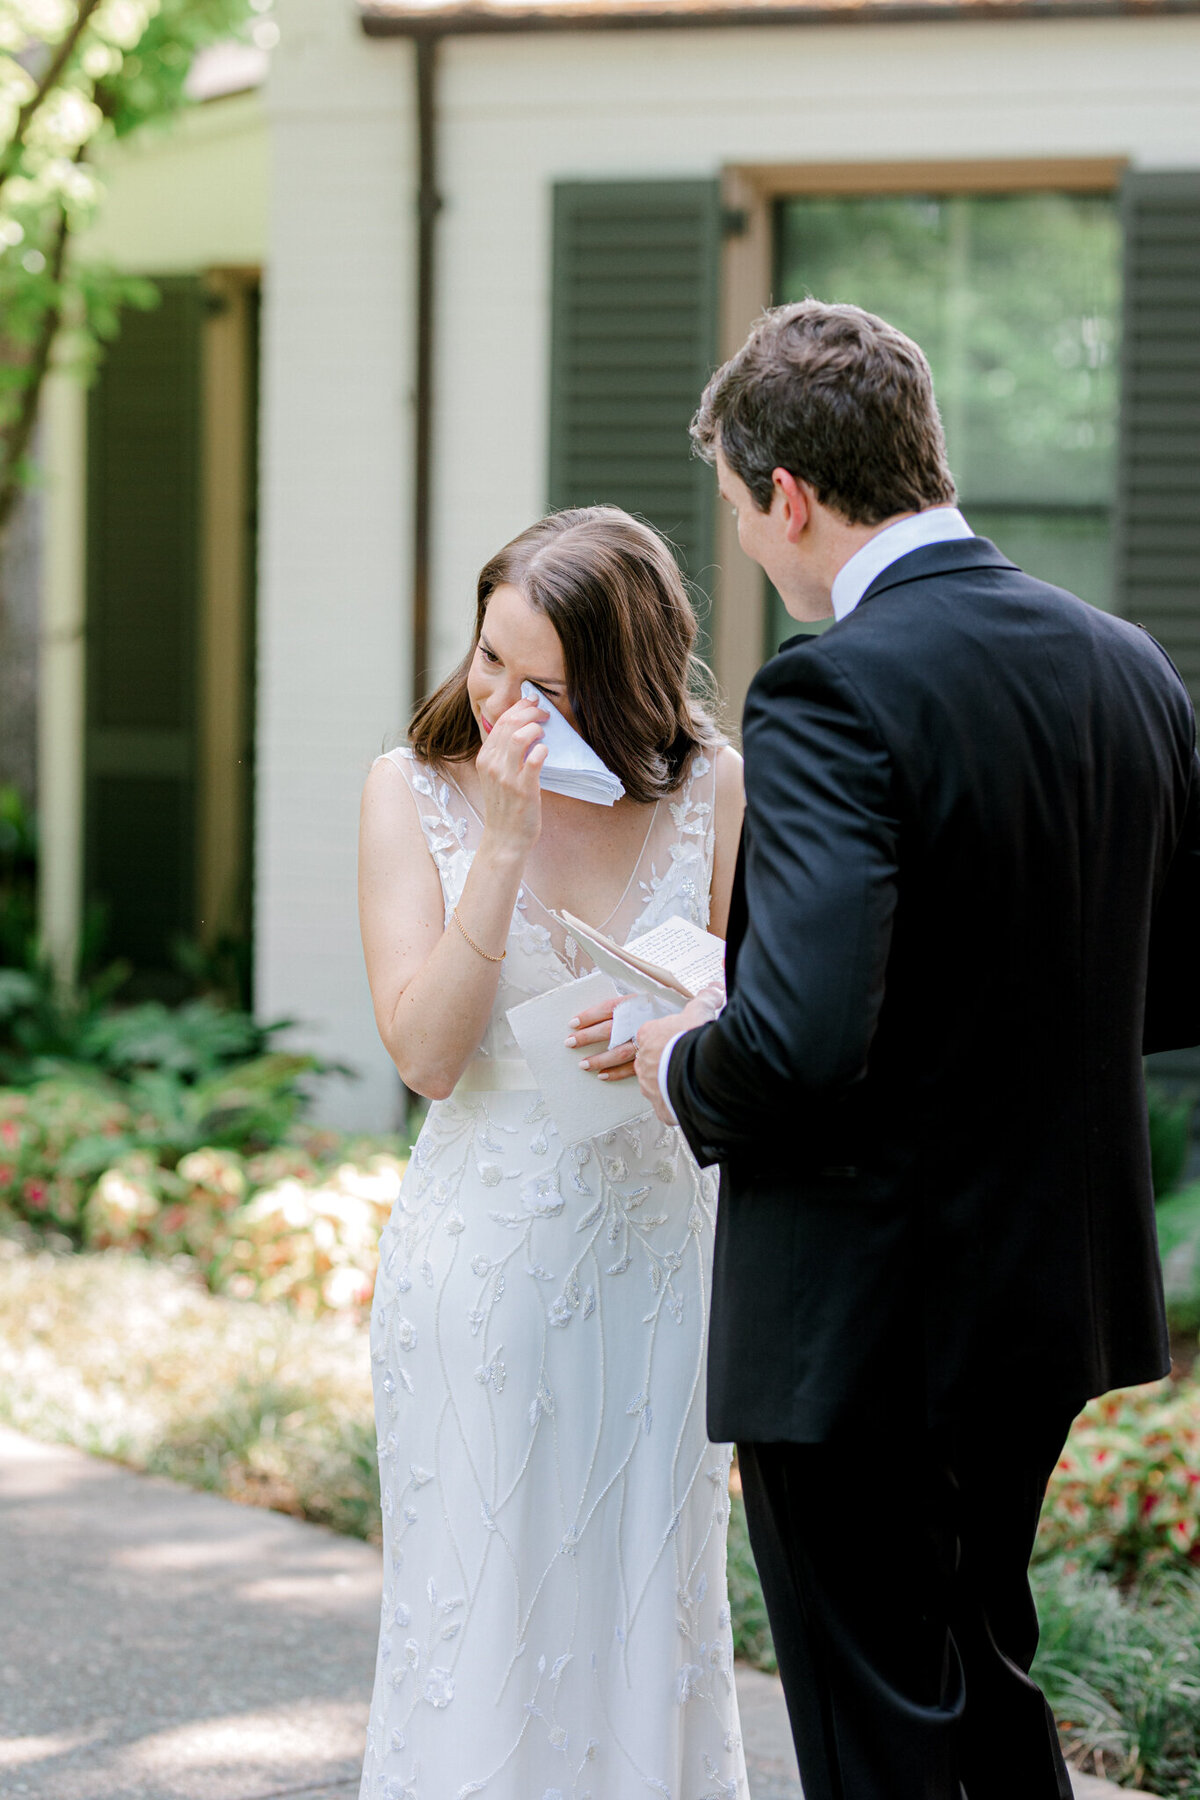 Gena & Matt's Wedding at the Dallas Arboretum | Dallas Wedding Photographer | Sami Kathryn Photography-82